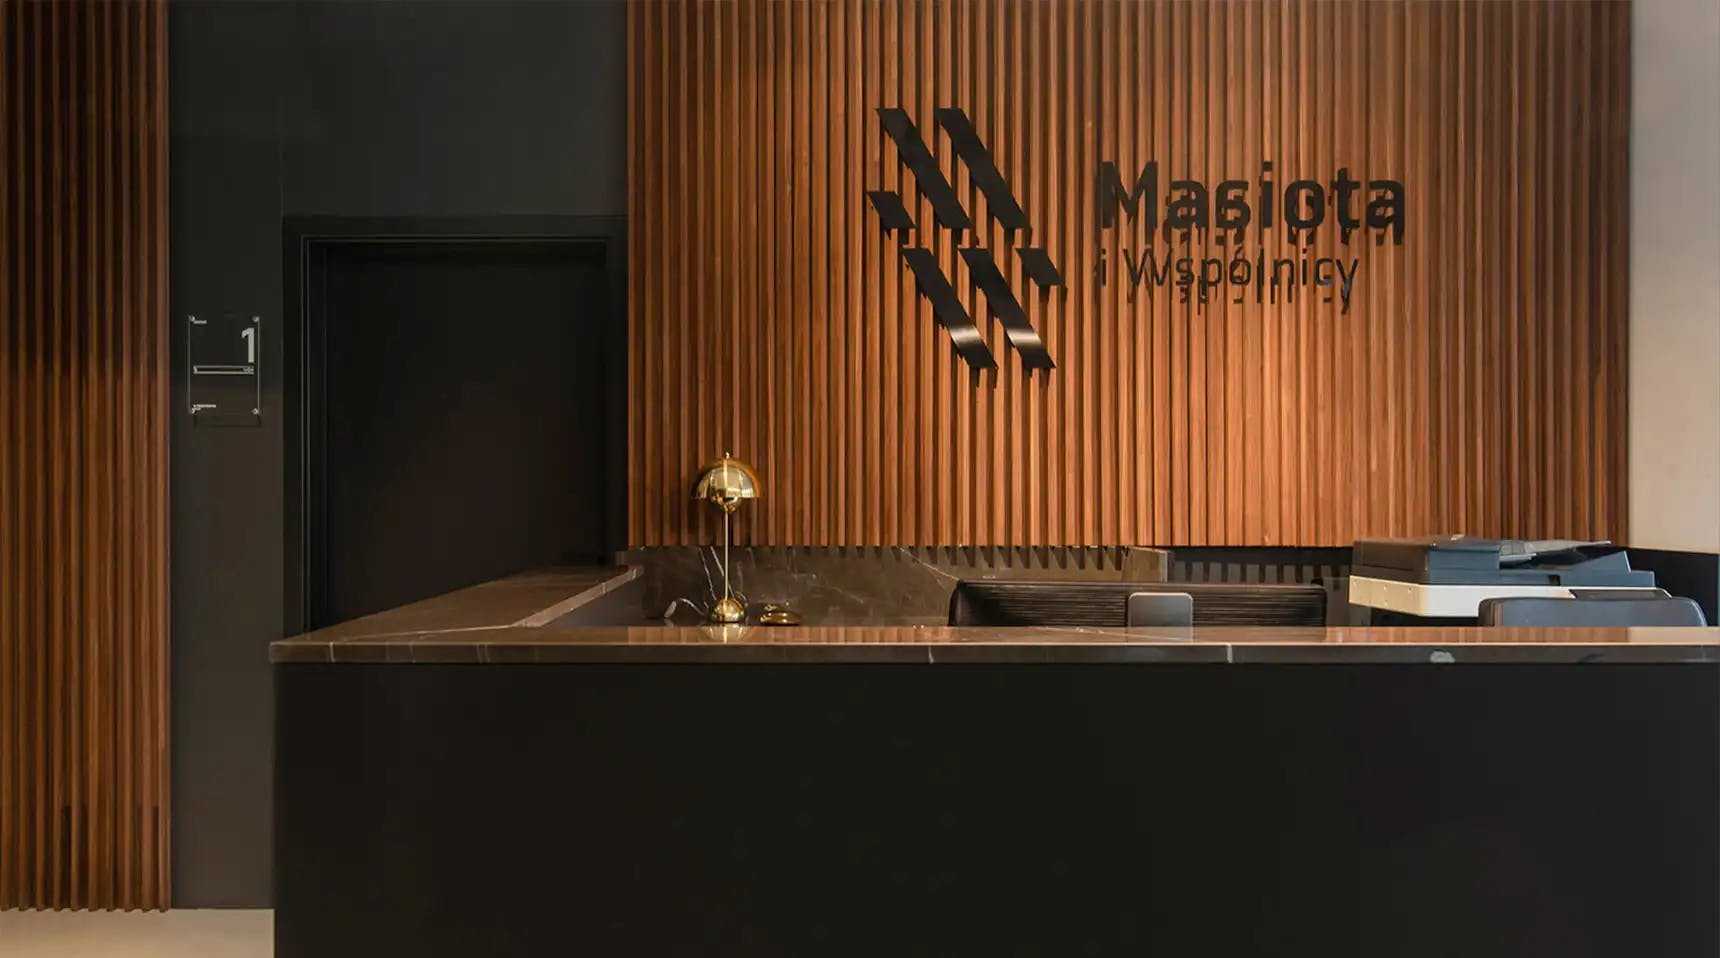 Obraz przedstawia recepcję biura z logo na ścianie Masiota i Wspólnicy